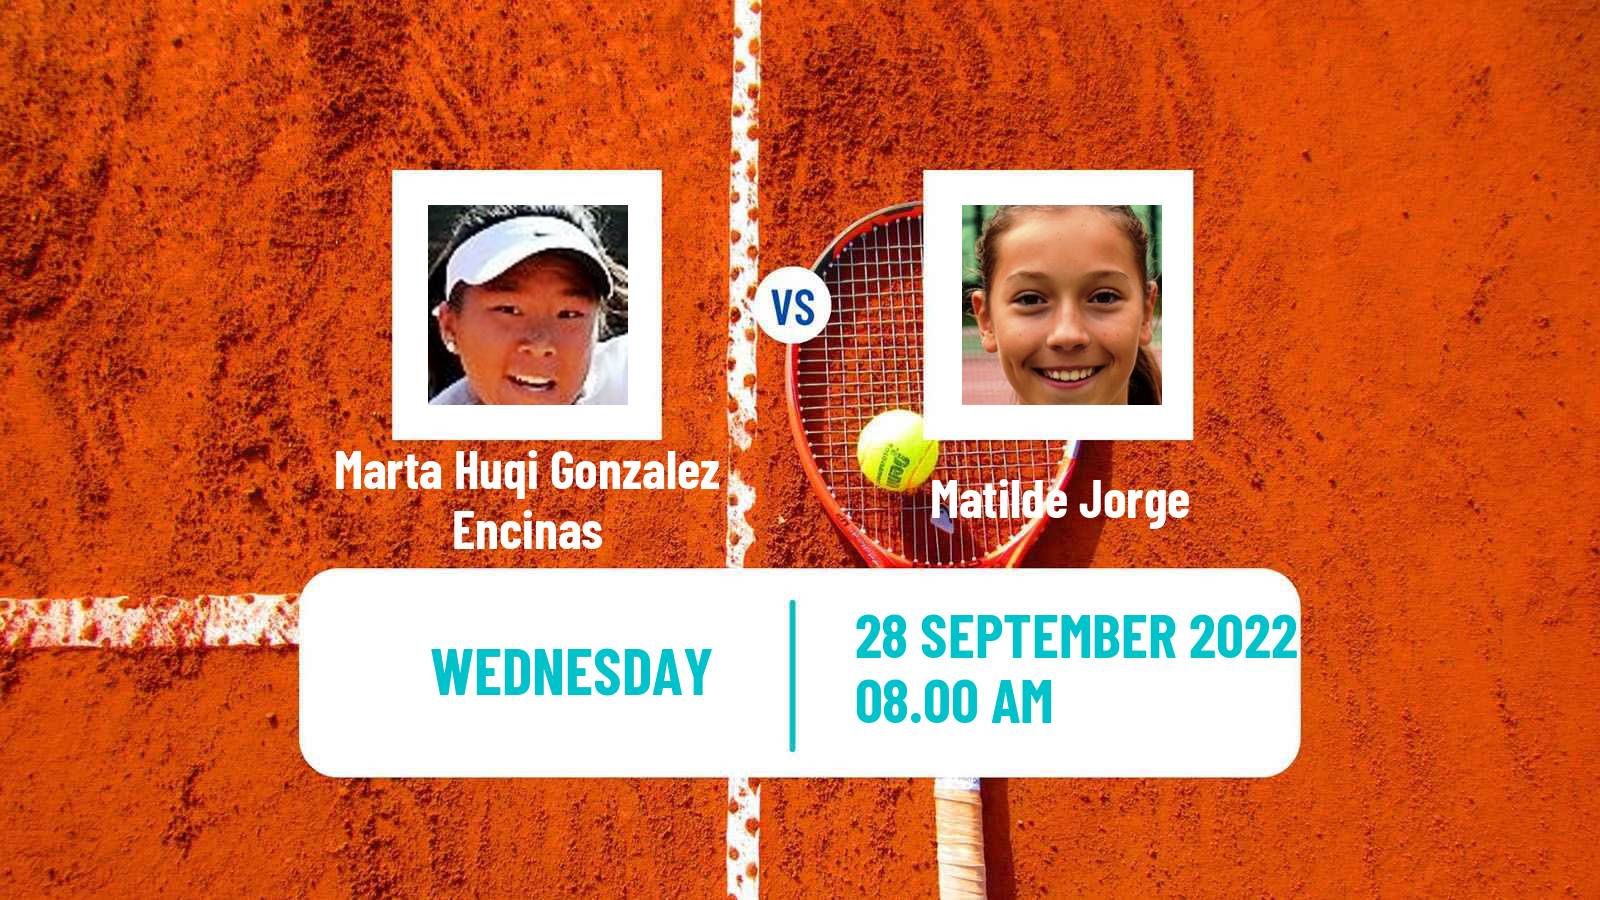 Tennis ITF Tournaments Marta Huqi Gonzalez Encinas - Matilde Jorge